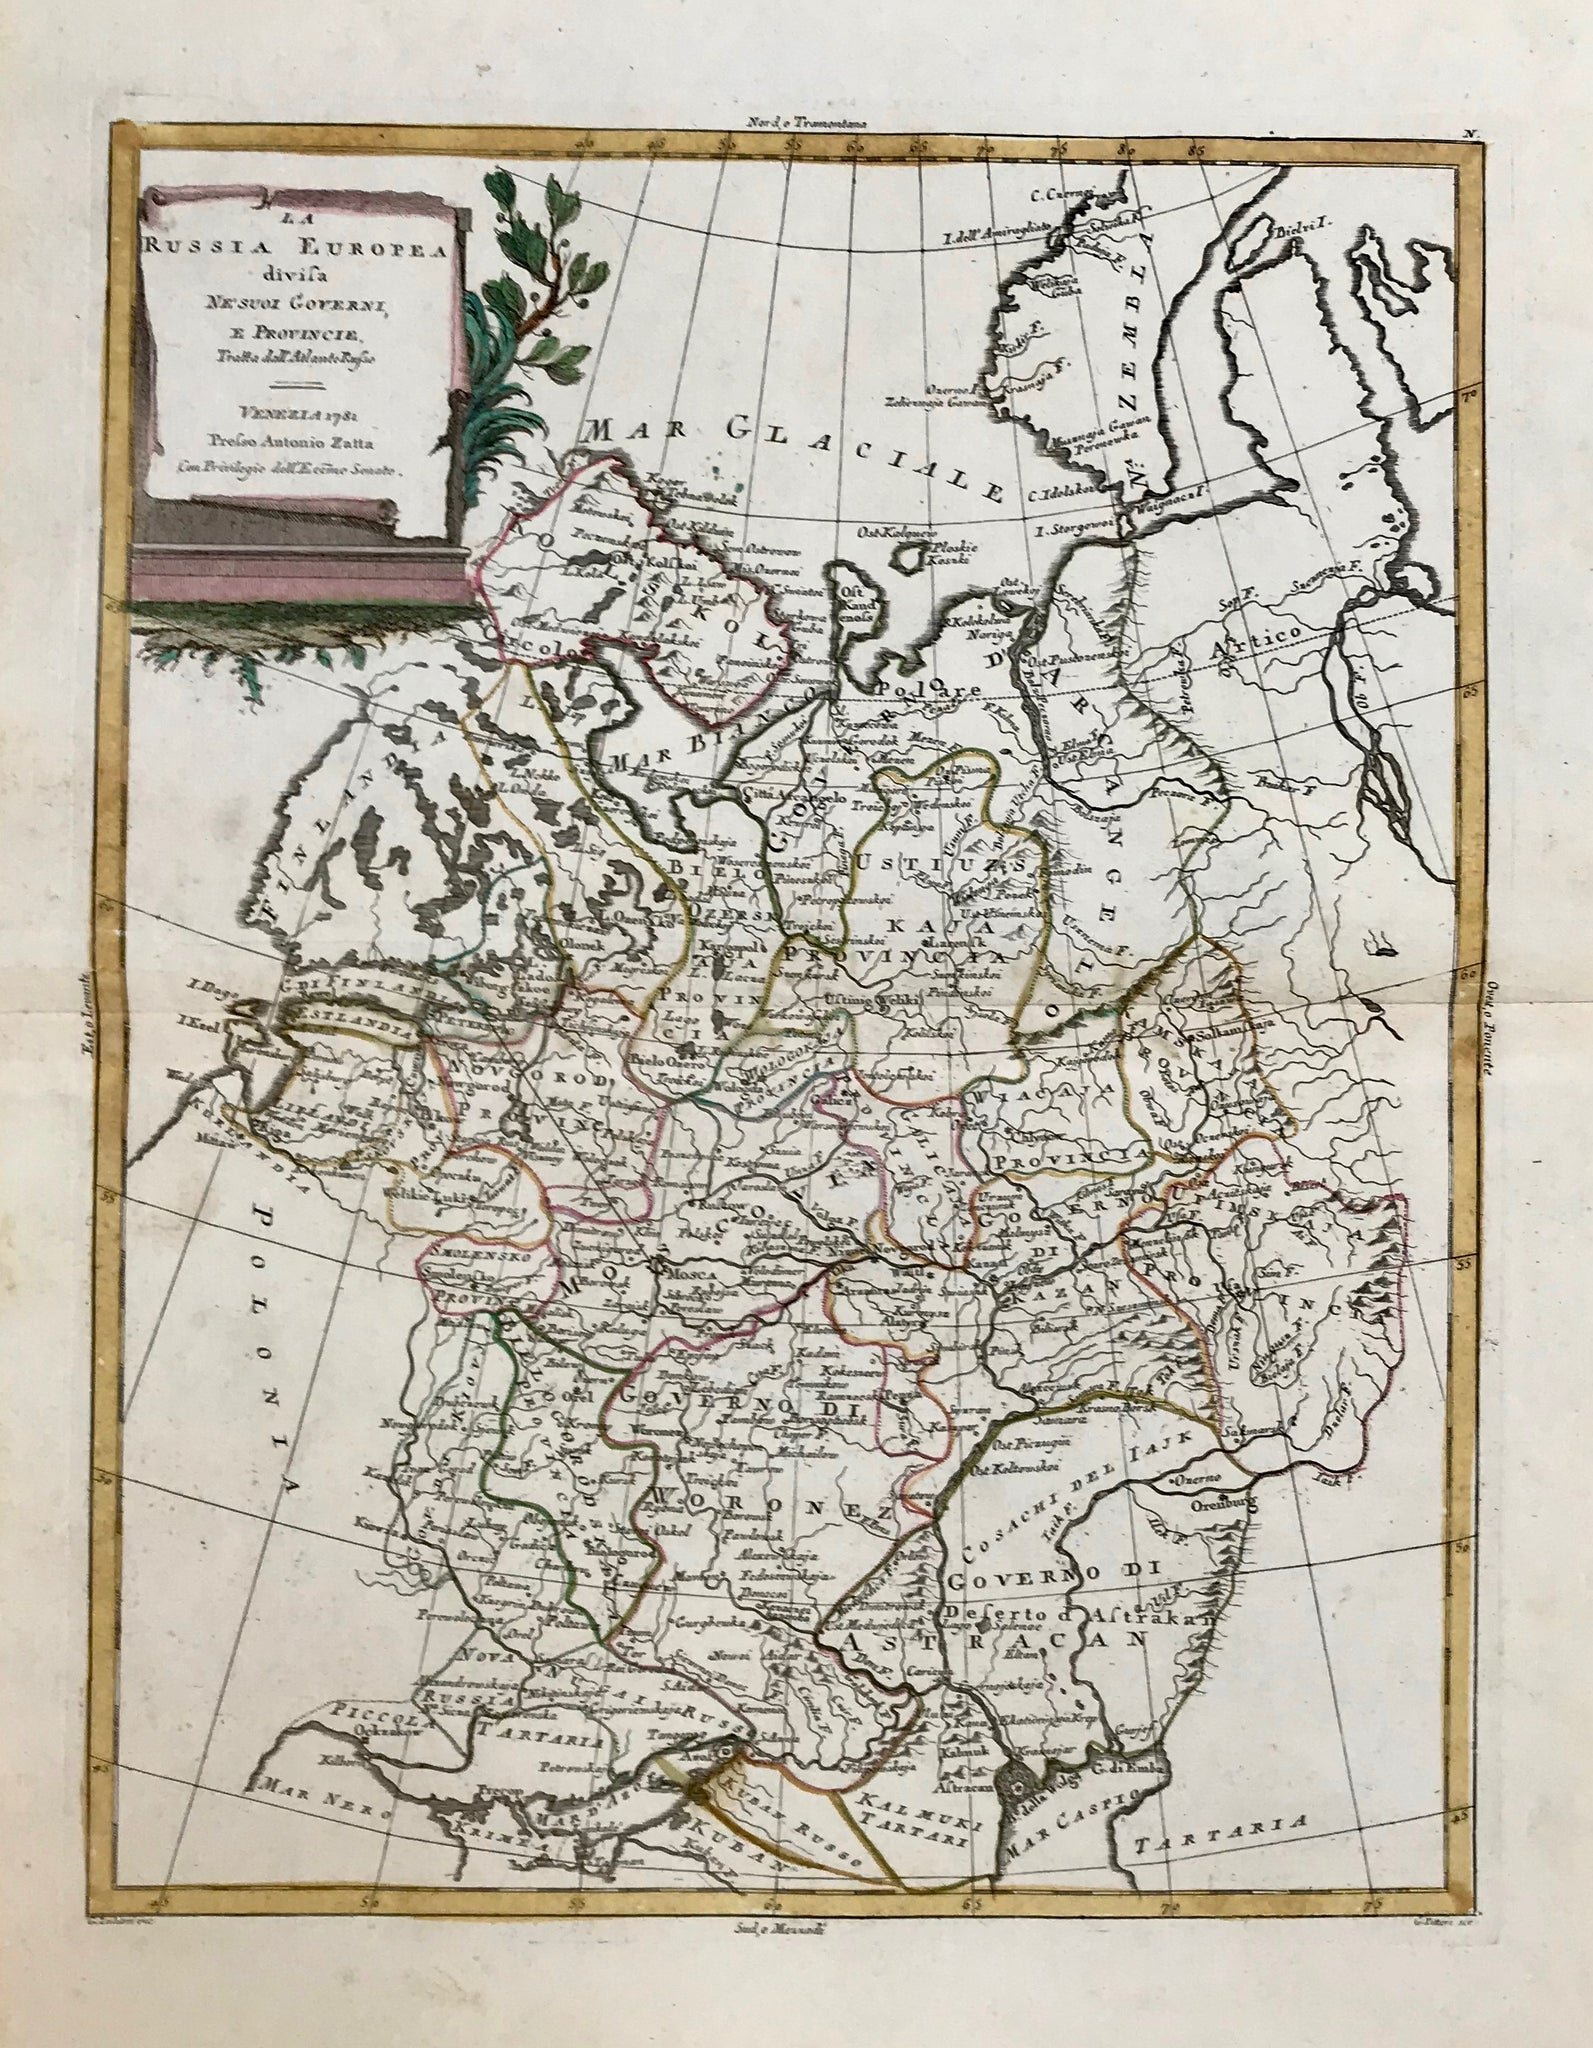 Maps, Russia, La Russia Europea divisa ne suoi Governi e Provincie